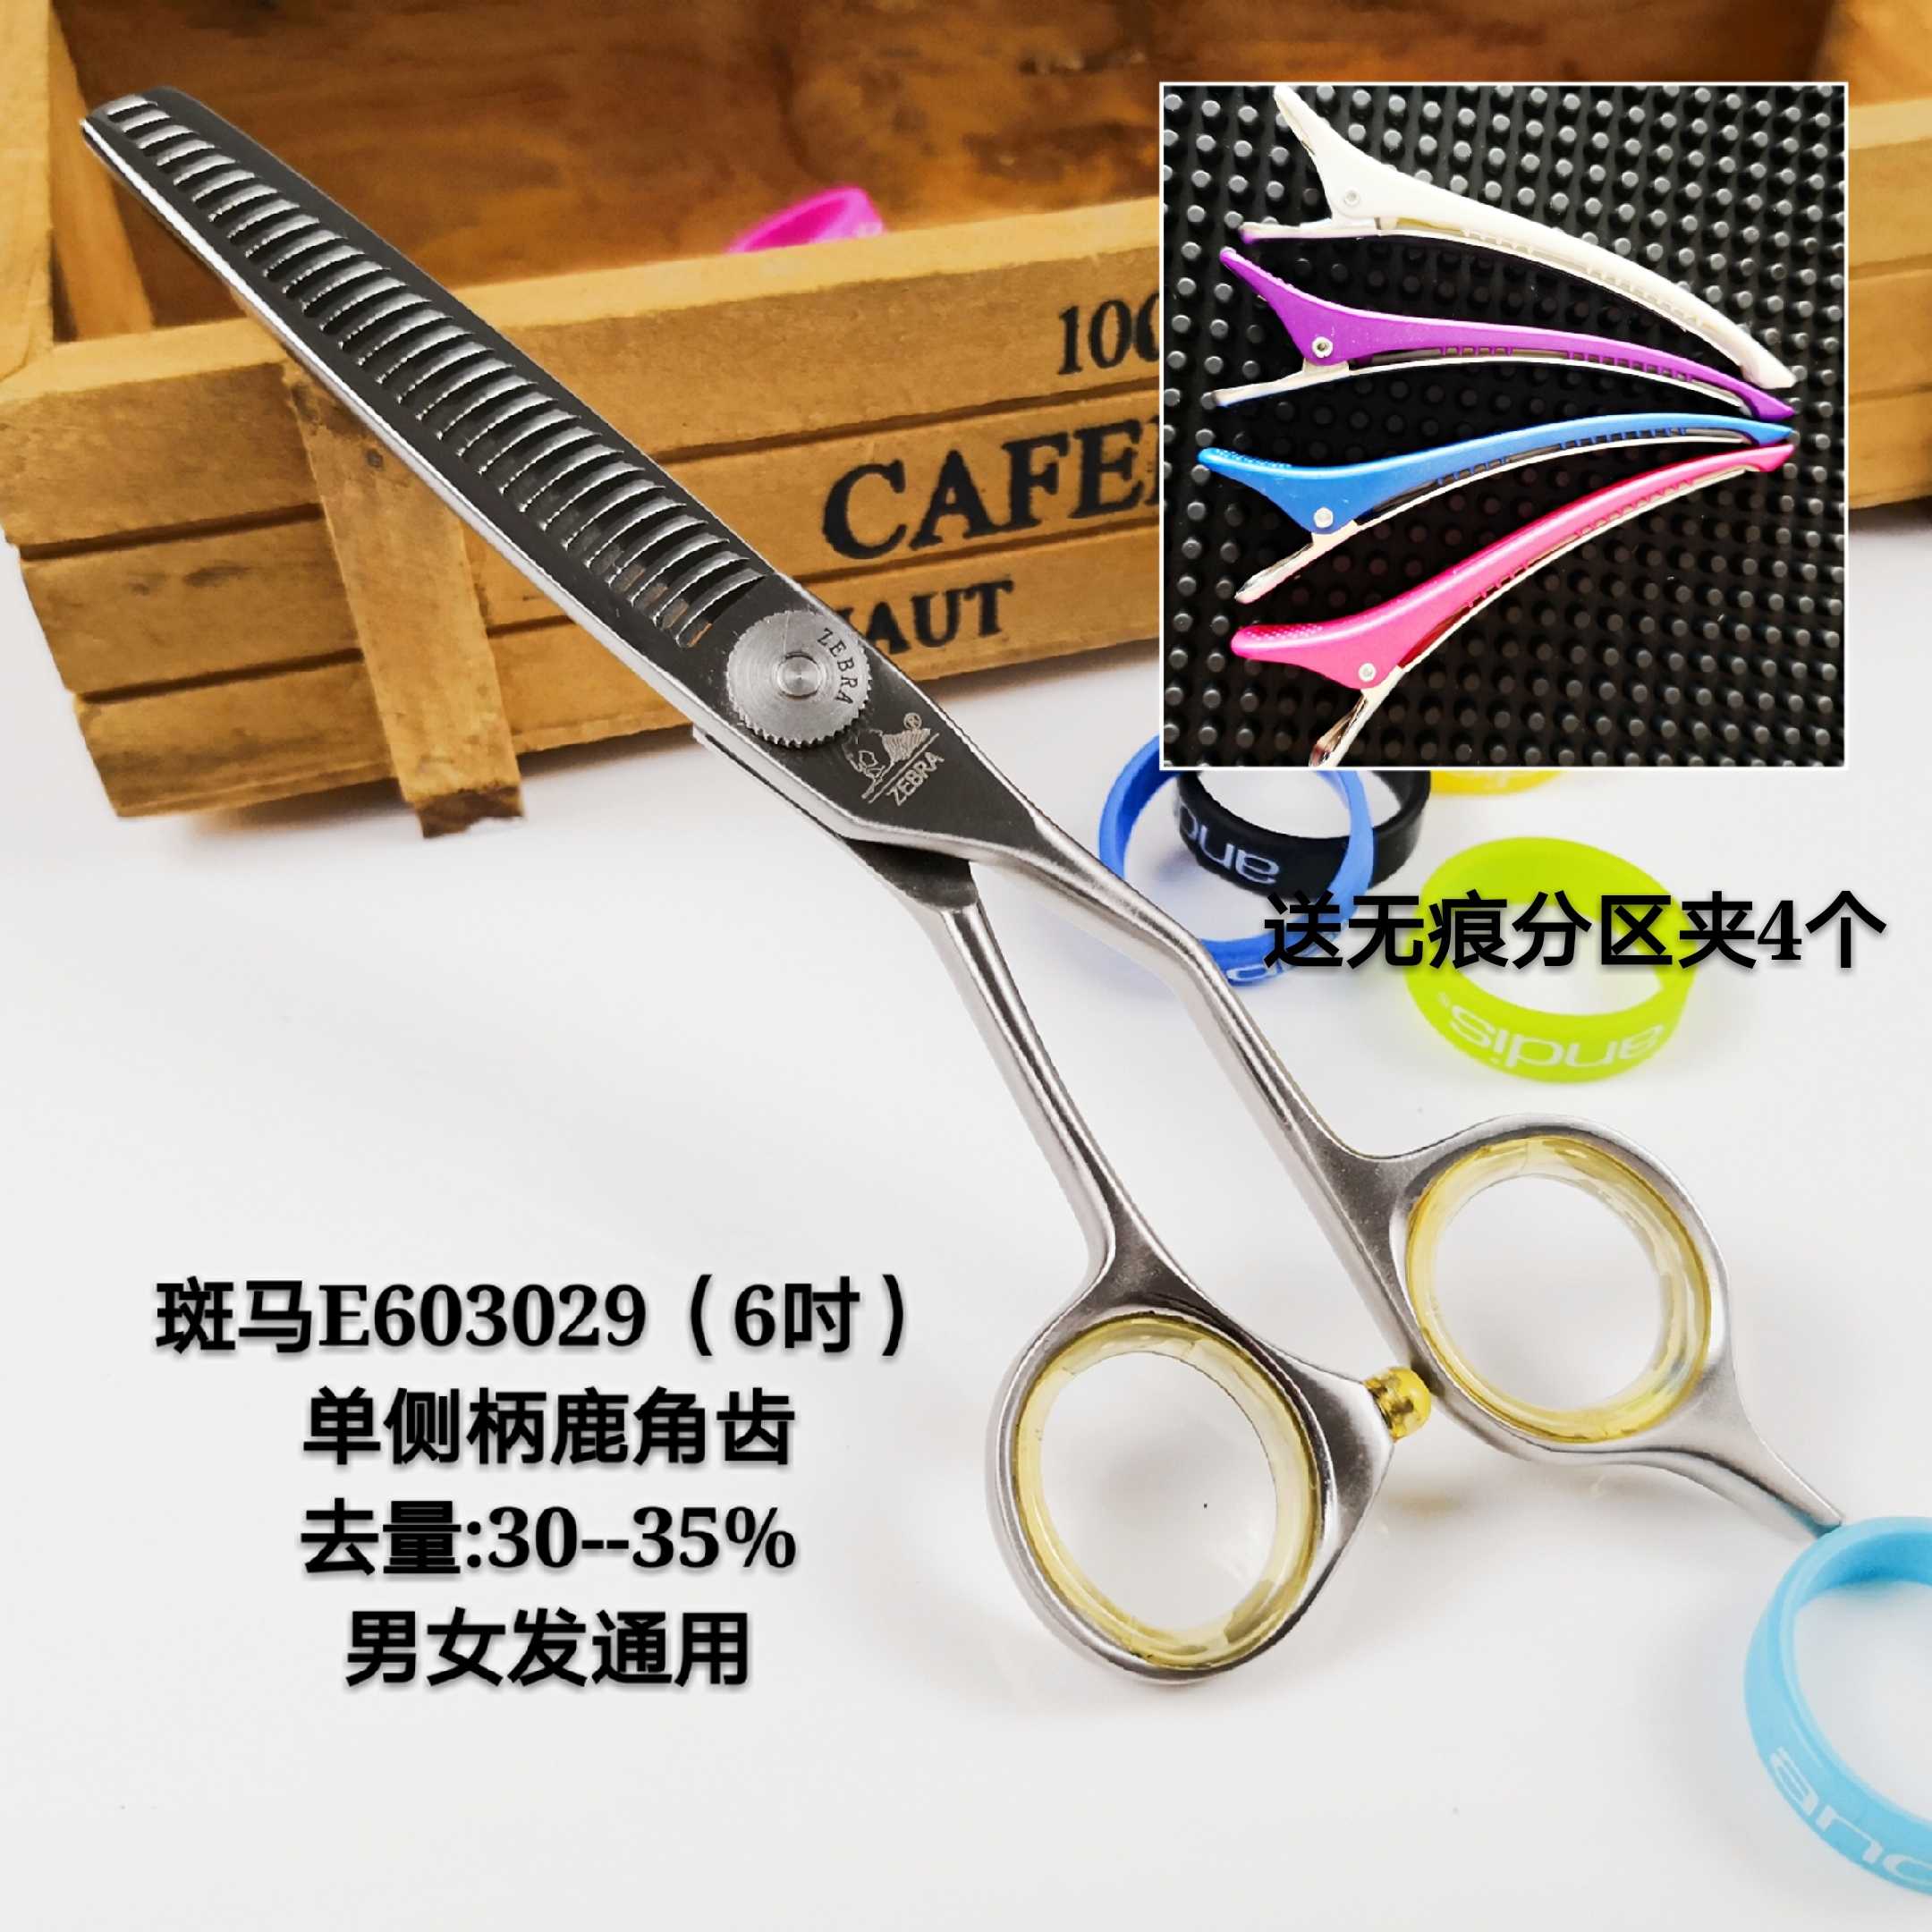 正品ZEBRA斑马剪刀E603029 专业理发美发牙剪打薄剪调量剪手型剪